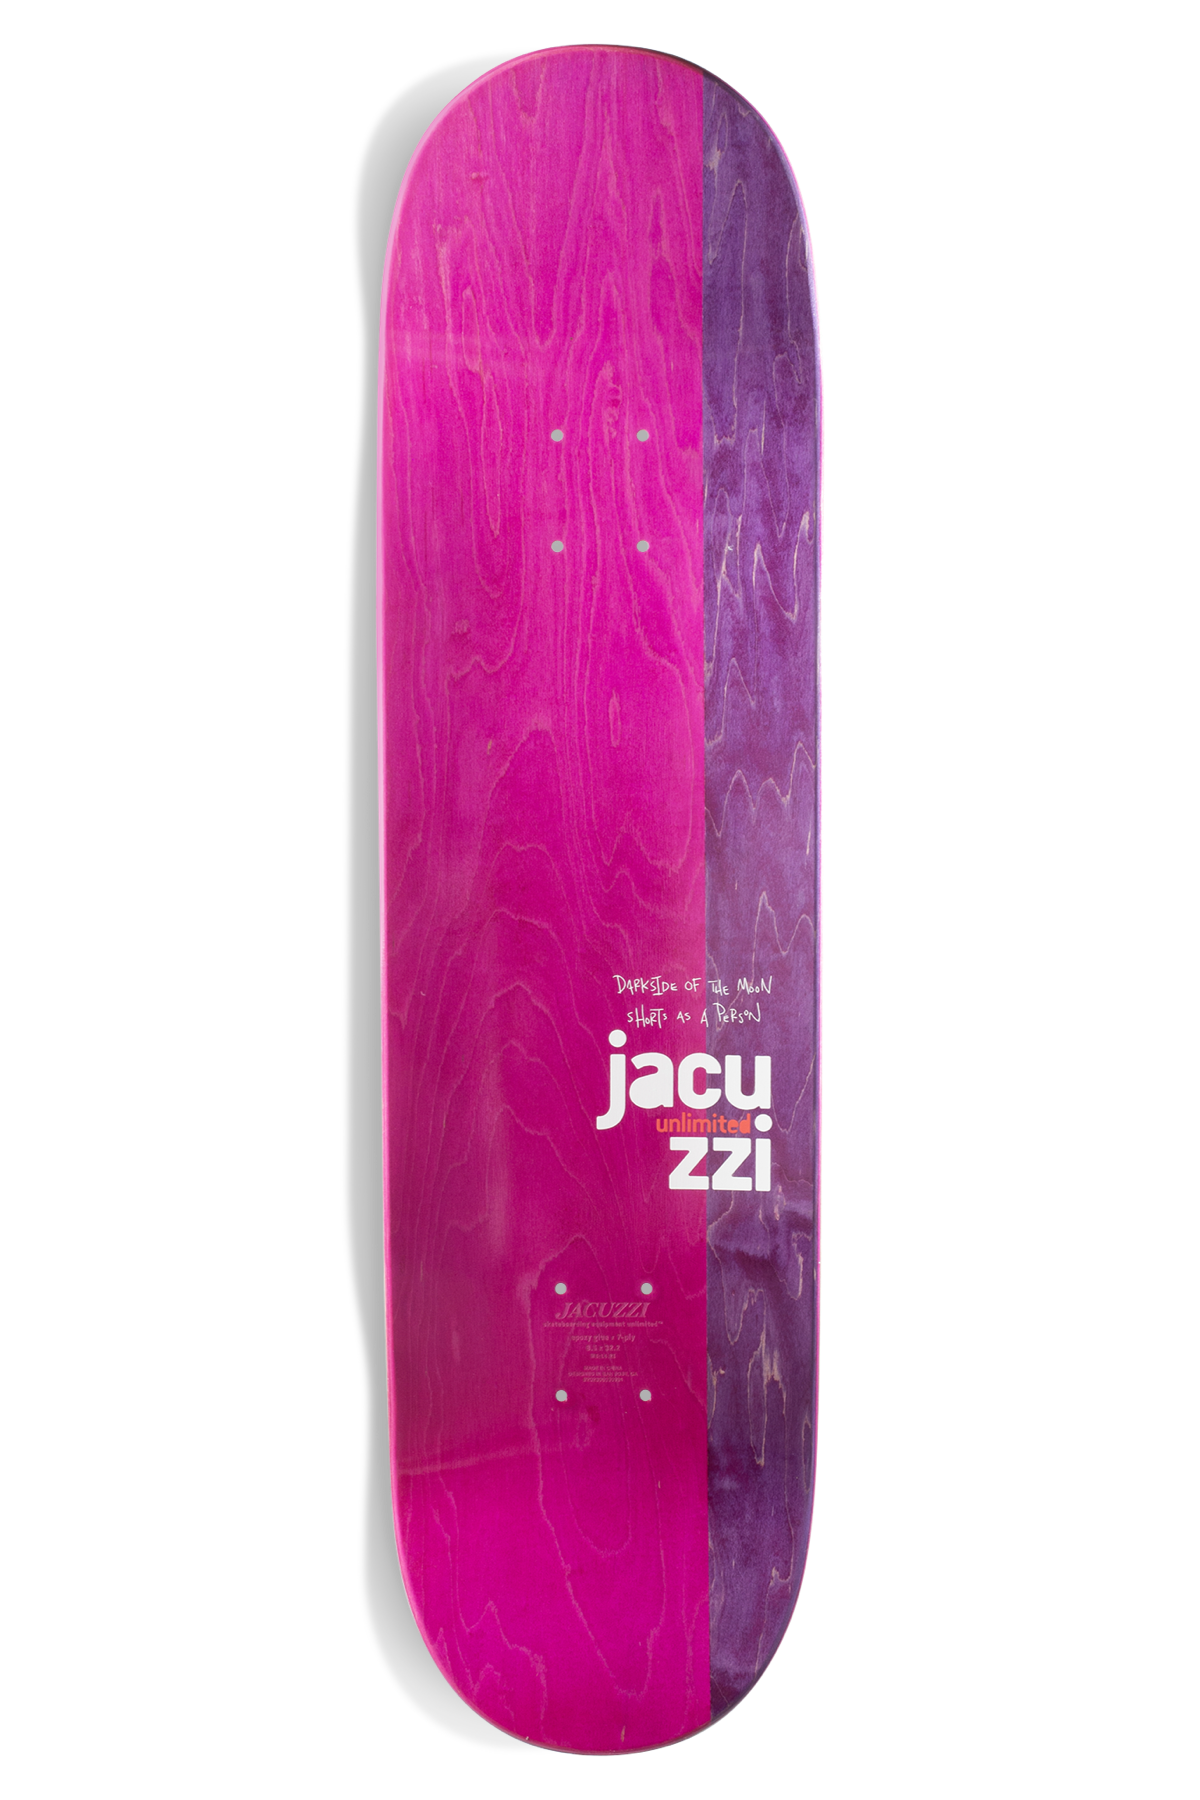 Skateboard Deck Jacuzzi - Louie Barletta Great Escape - 8.0" / Jual Papan Skateboard Jacuzzi